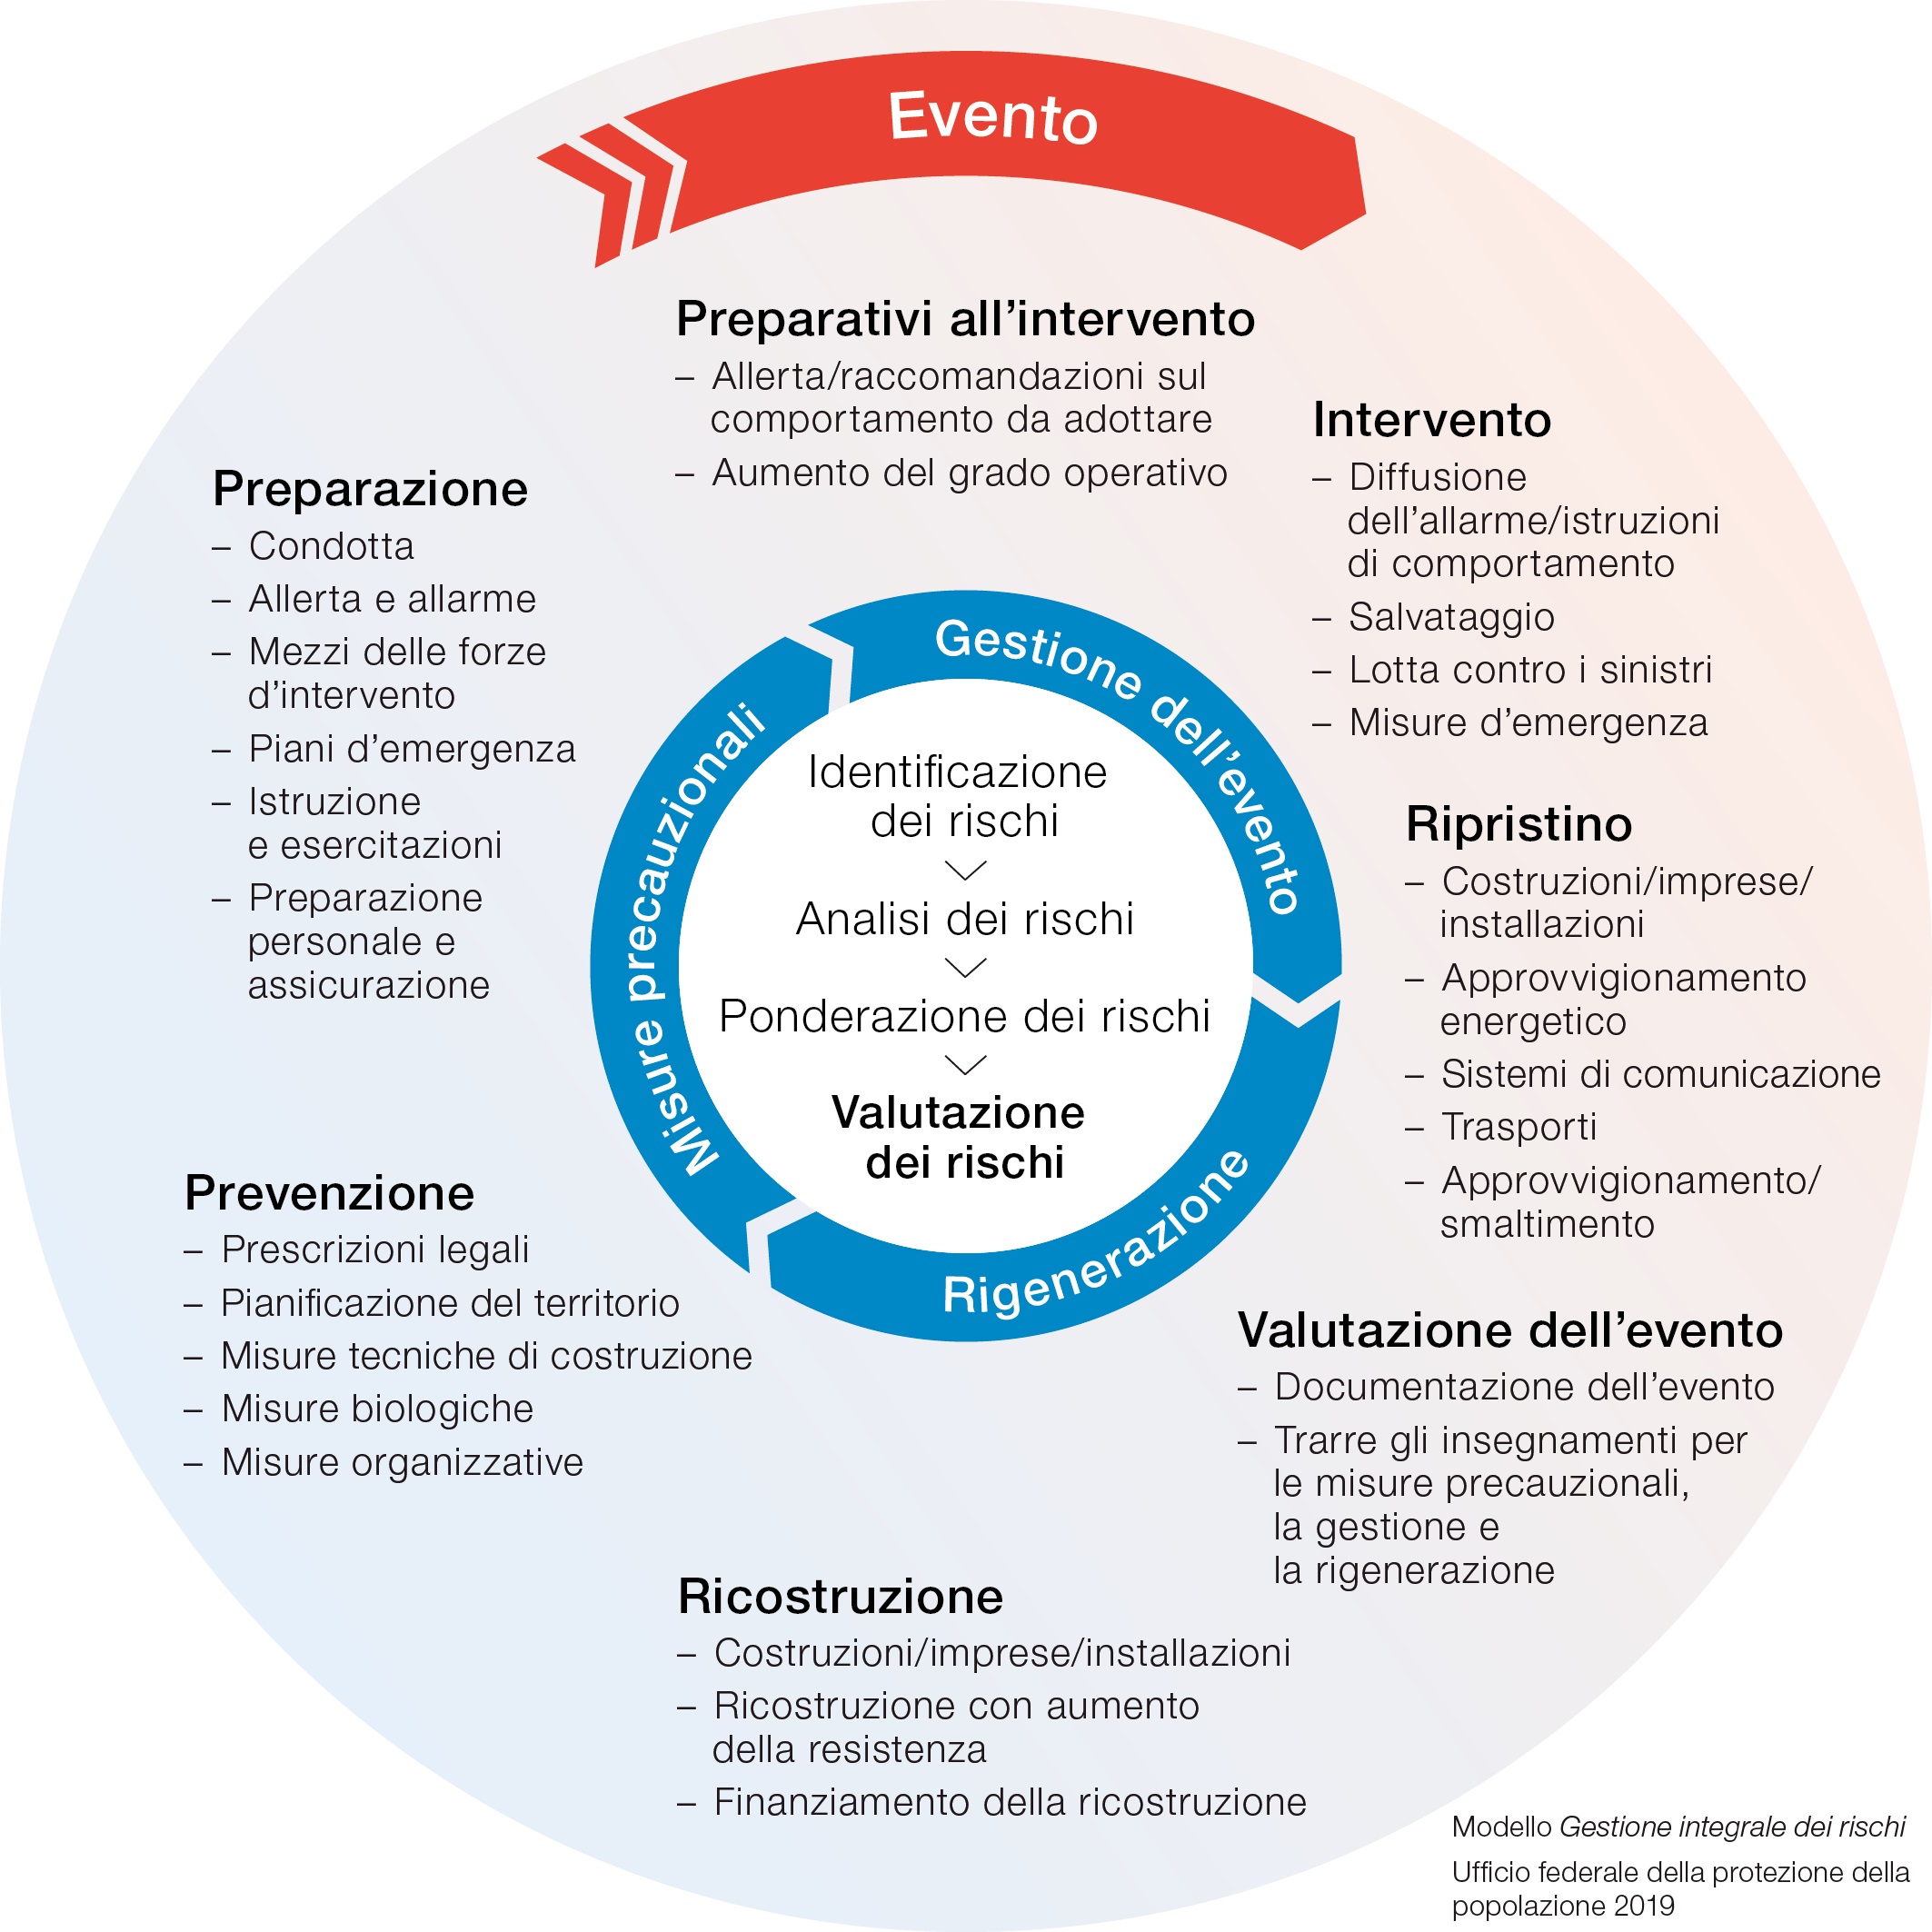 Tipologie di misure della gestione integrale dei rischi e fasi di attuazione (UFPP 2001, completate 2012)